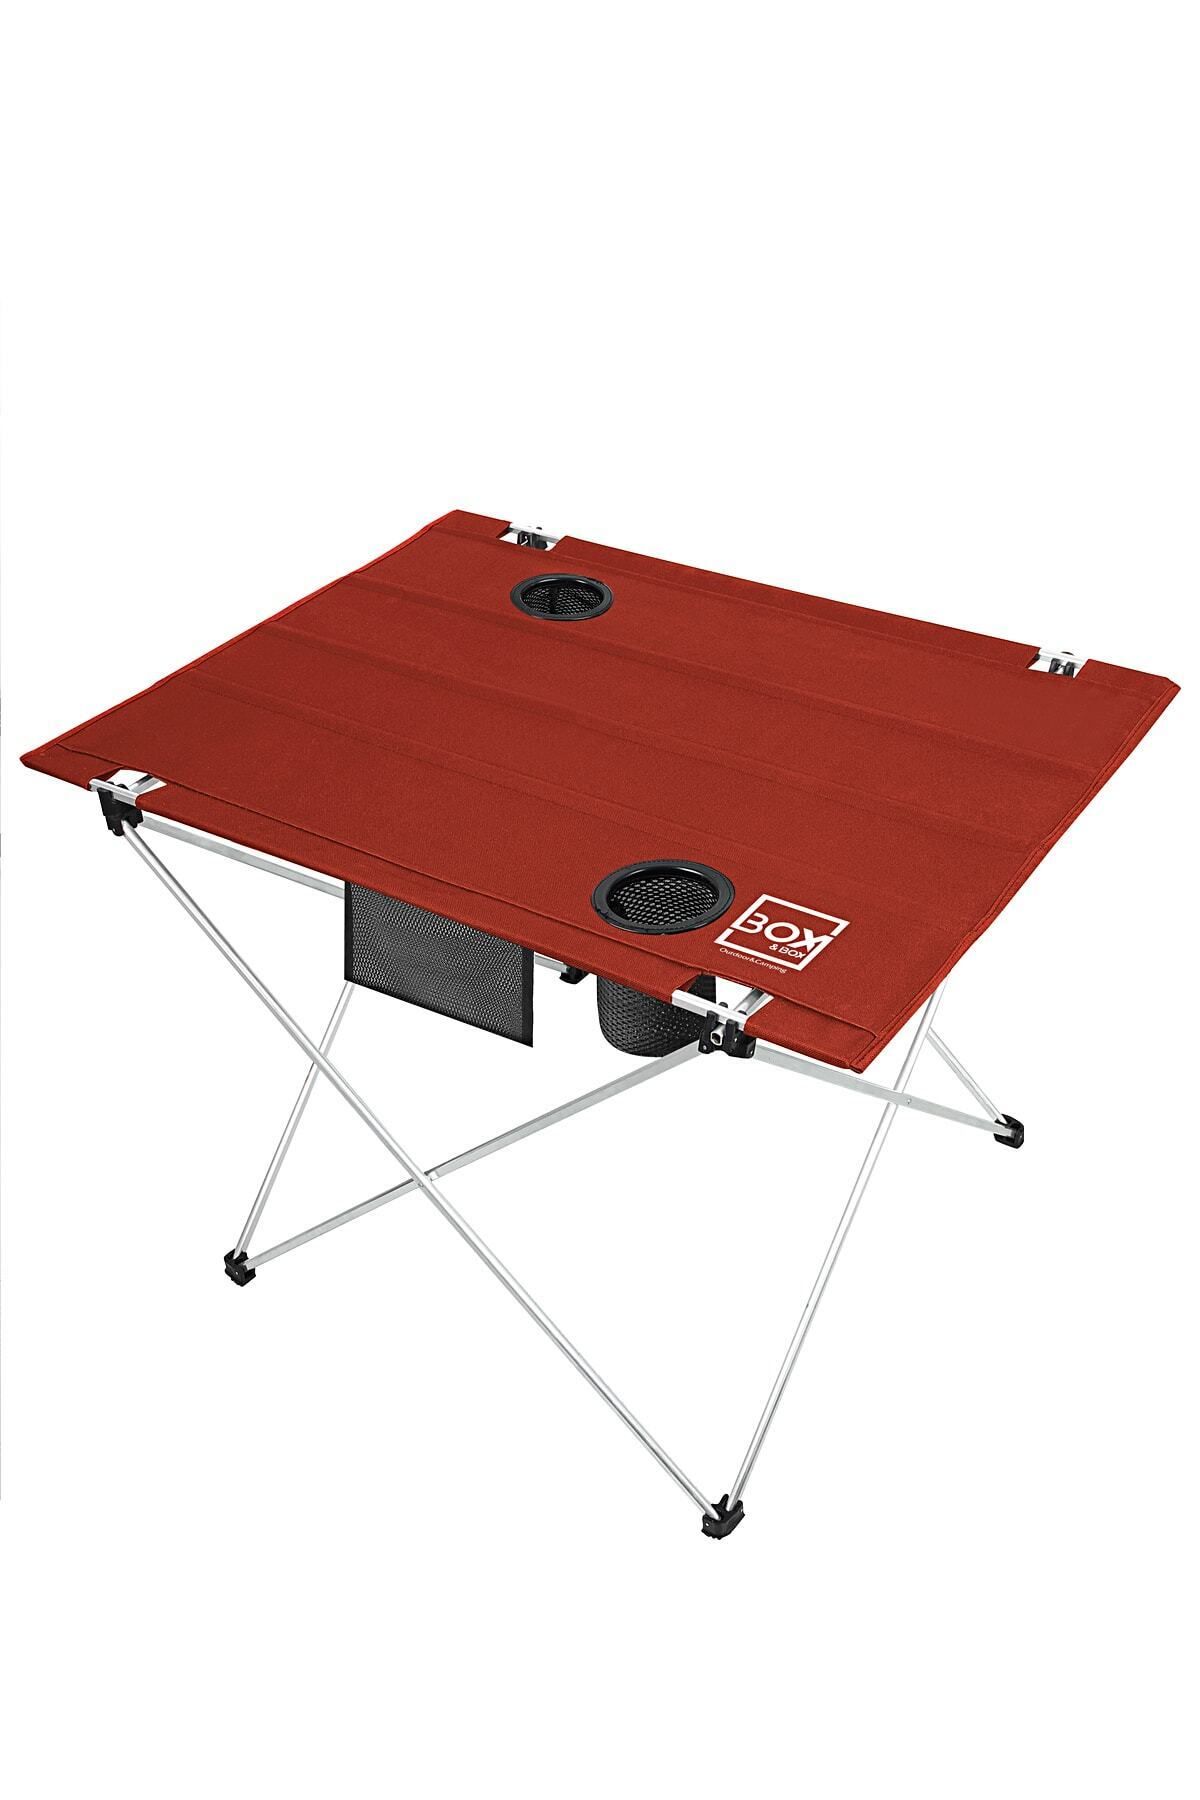 Box&Box Katlanabilir Kumaş Kamp Ve Piknik Masası, Kırmızı, 2 Bardak Gözlü, Geniş 73 X 55 X 48 Cm